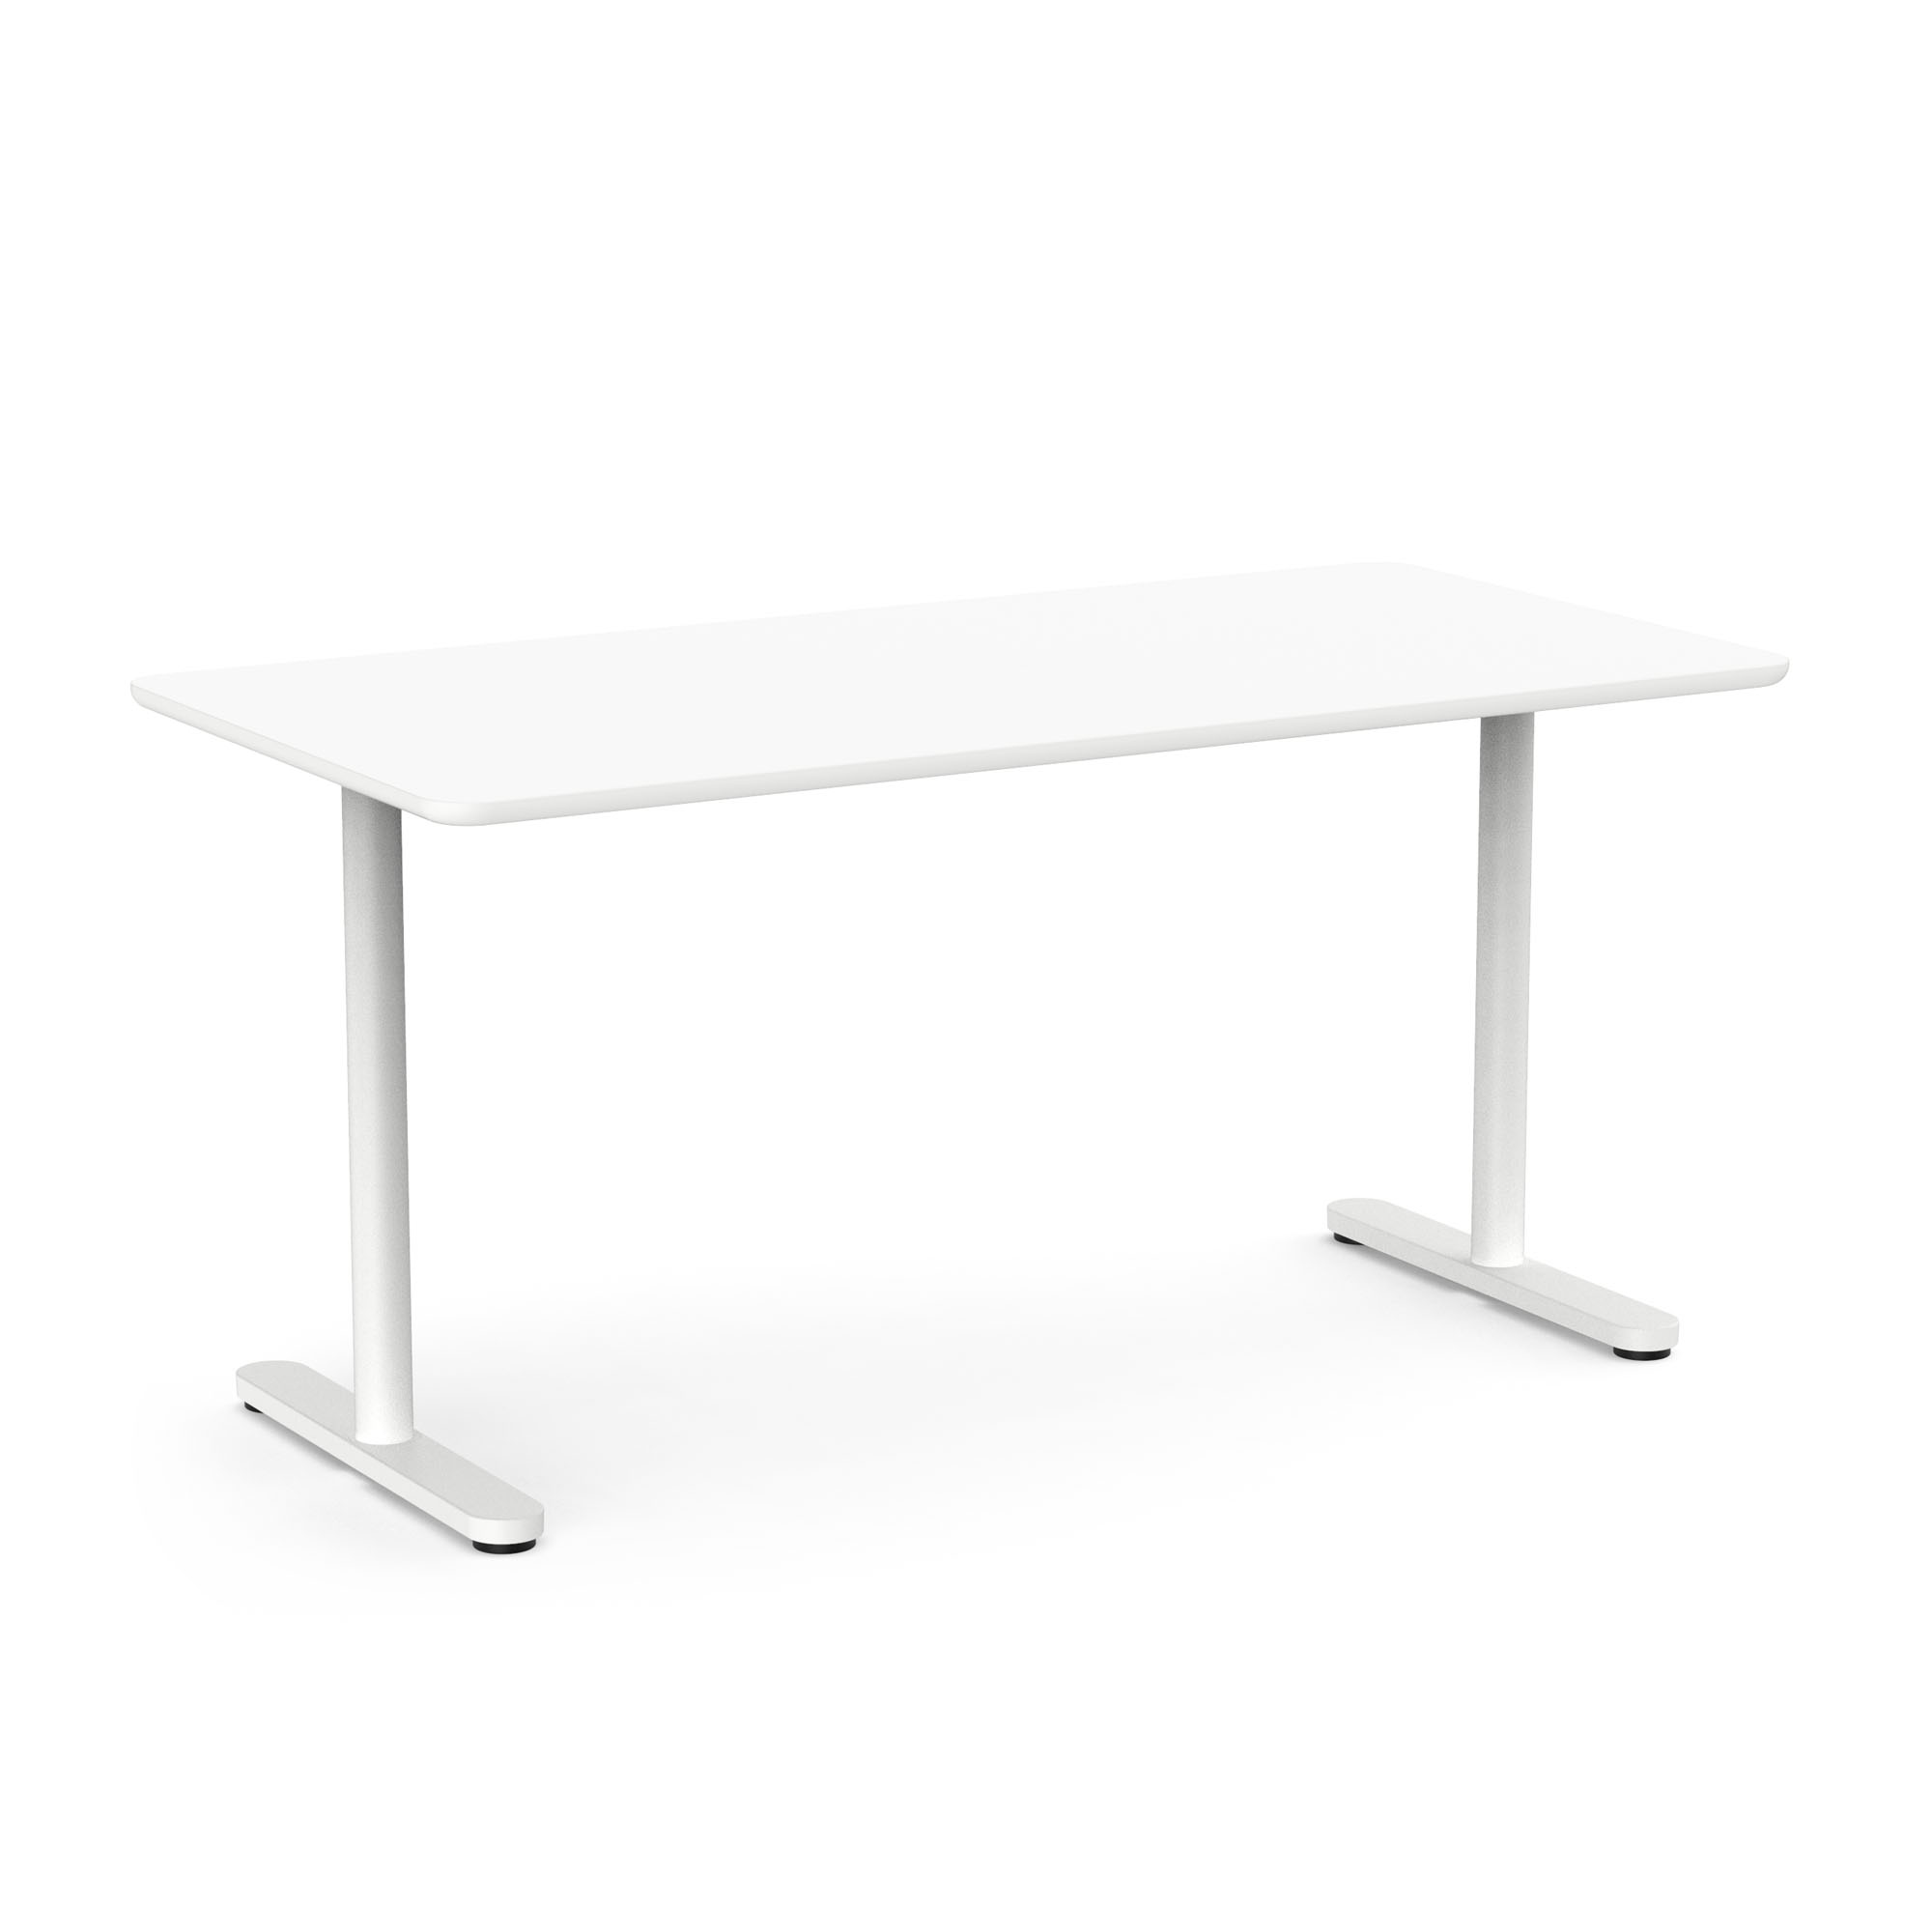 Raise Fixed Height Single Desk, White, 60", White Legs,White,hi-res